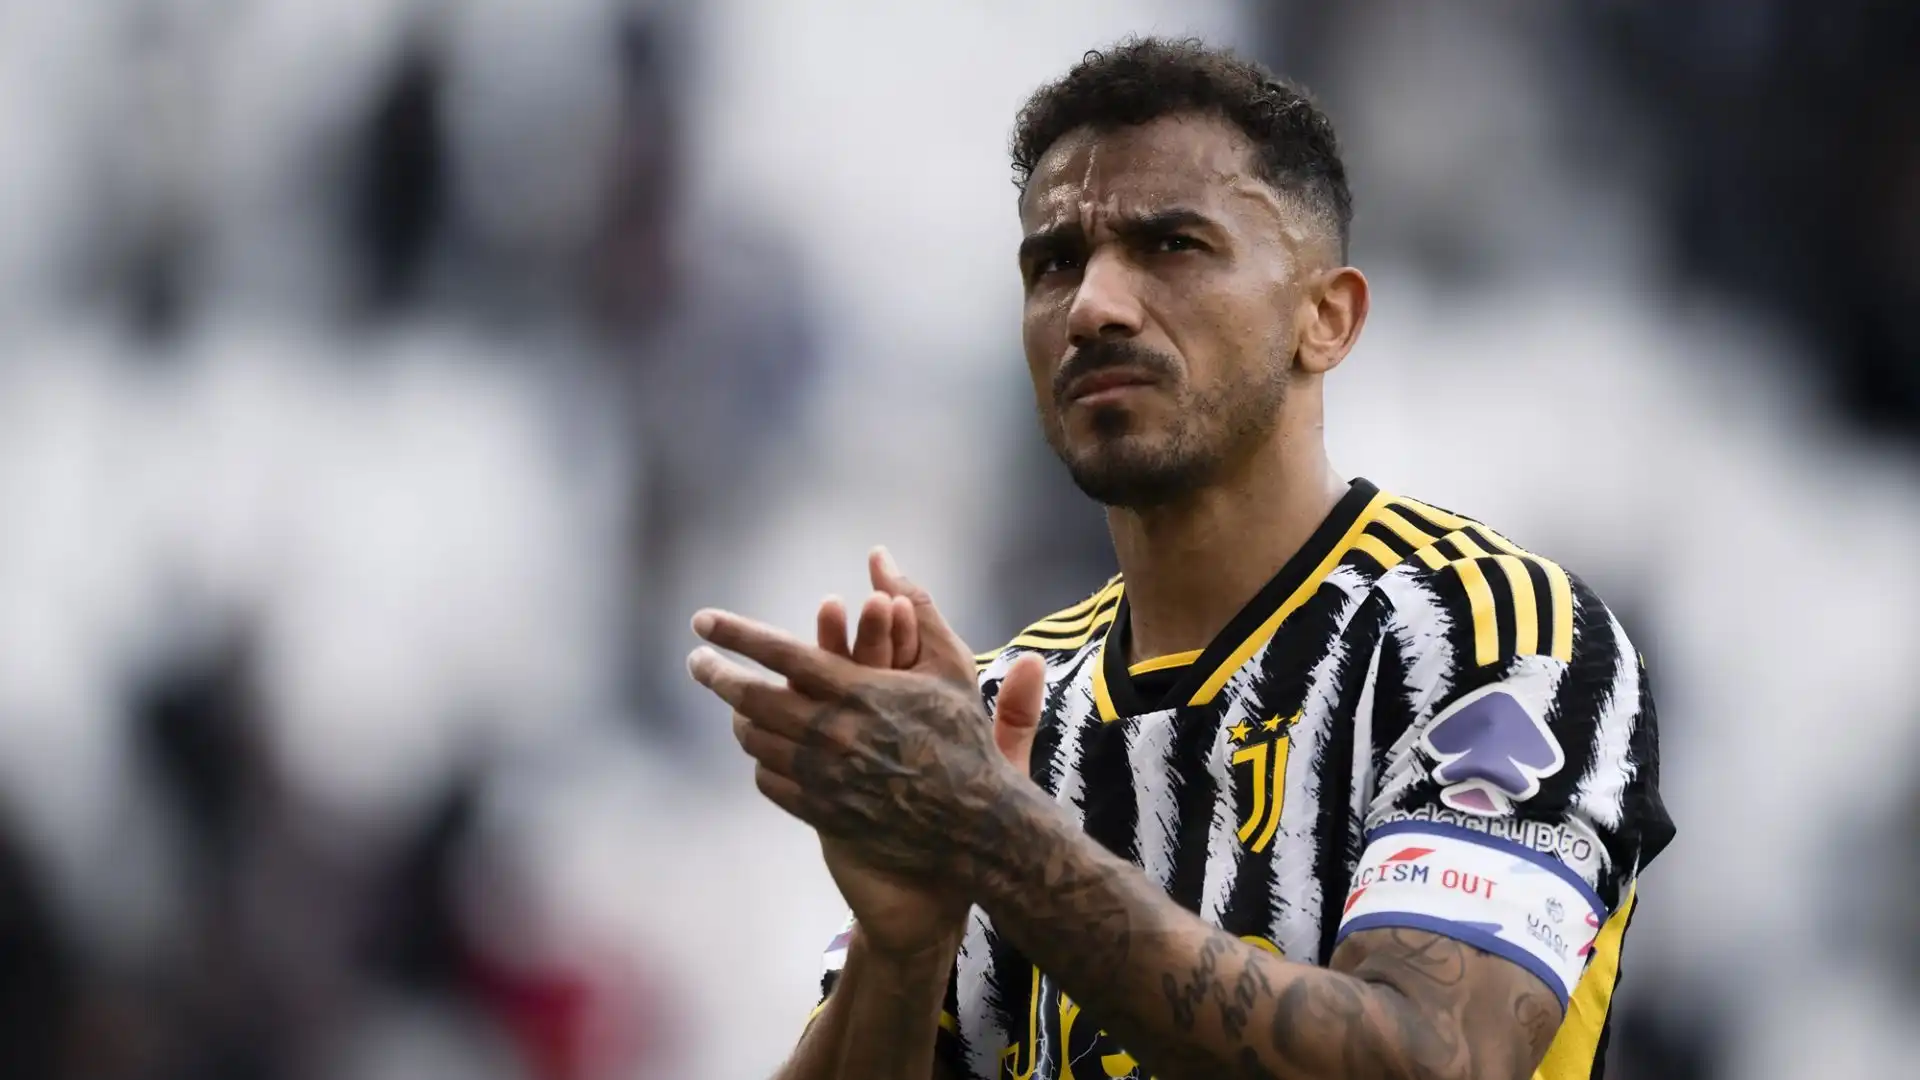 Danilo potrebbe lasciare la Juventus nei prossimi mesi